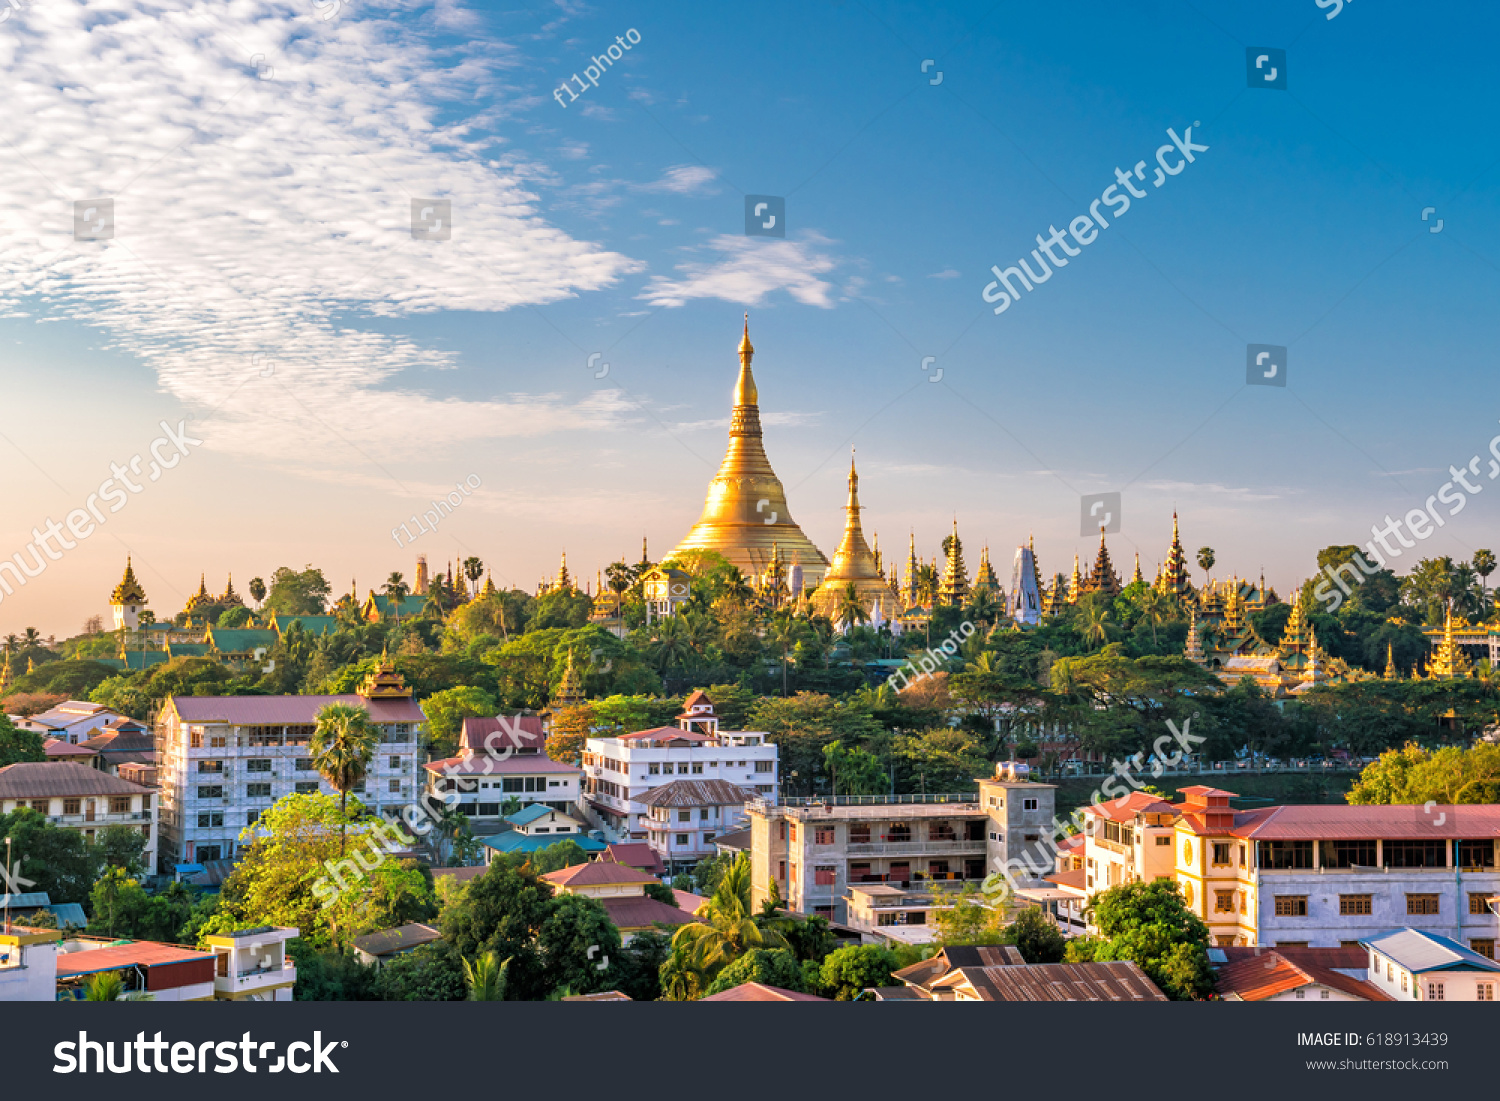 Yangon skyline with Shwedagon Pagoda  in Myanmar #618913439